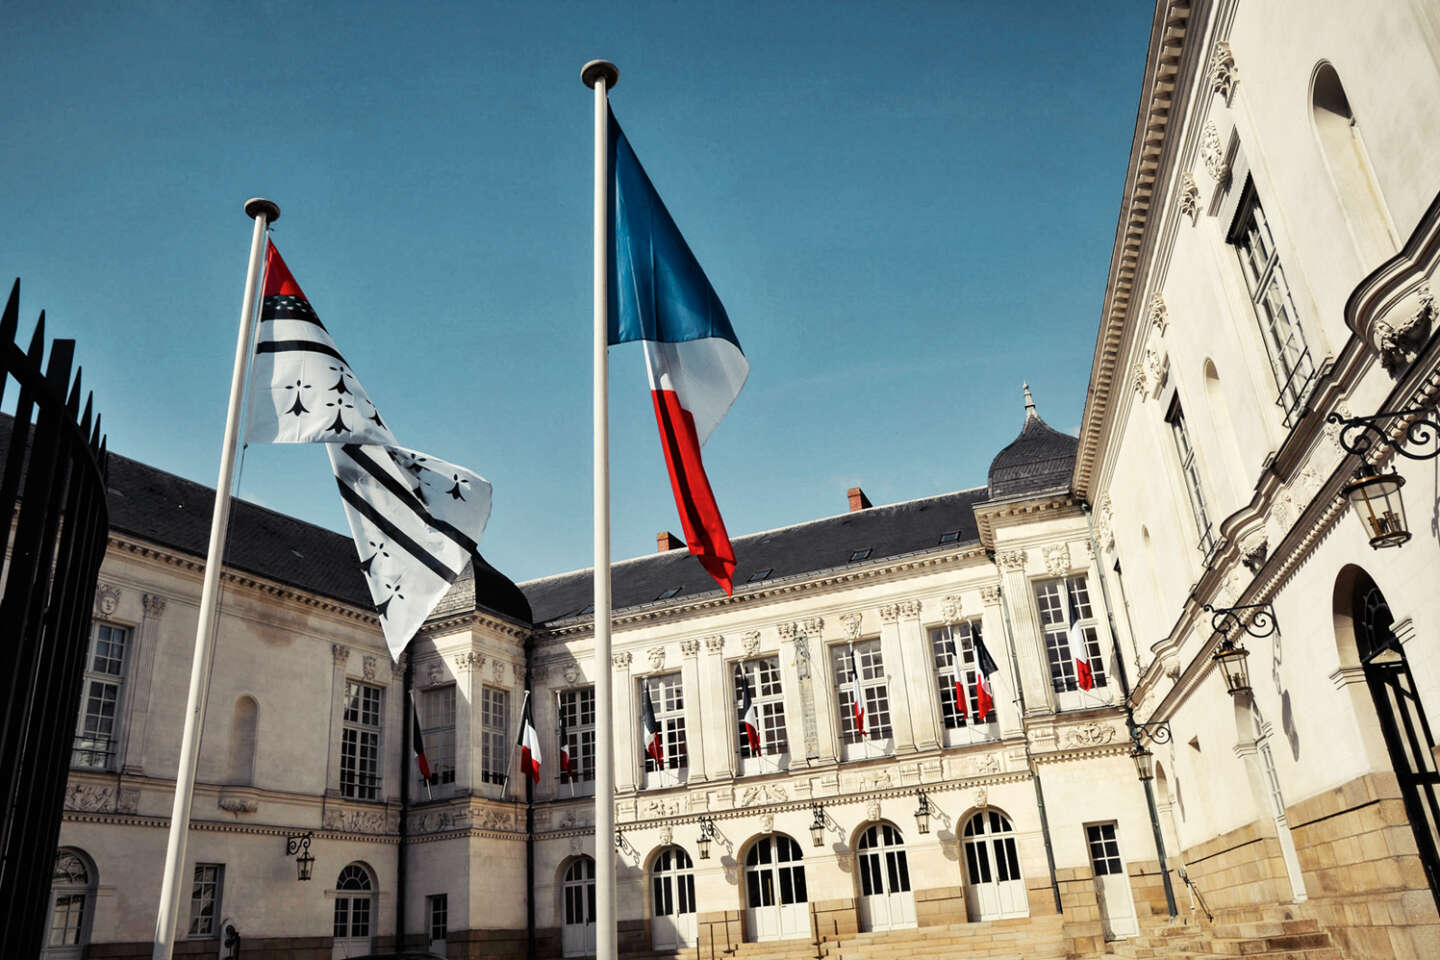 Histoire. Le drapeau breton a 100 ans : retour sur ce symbole qui